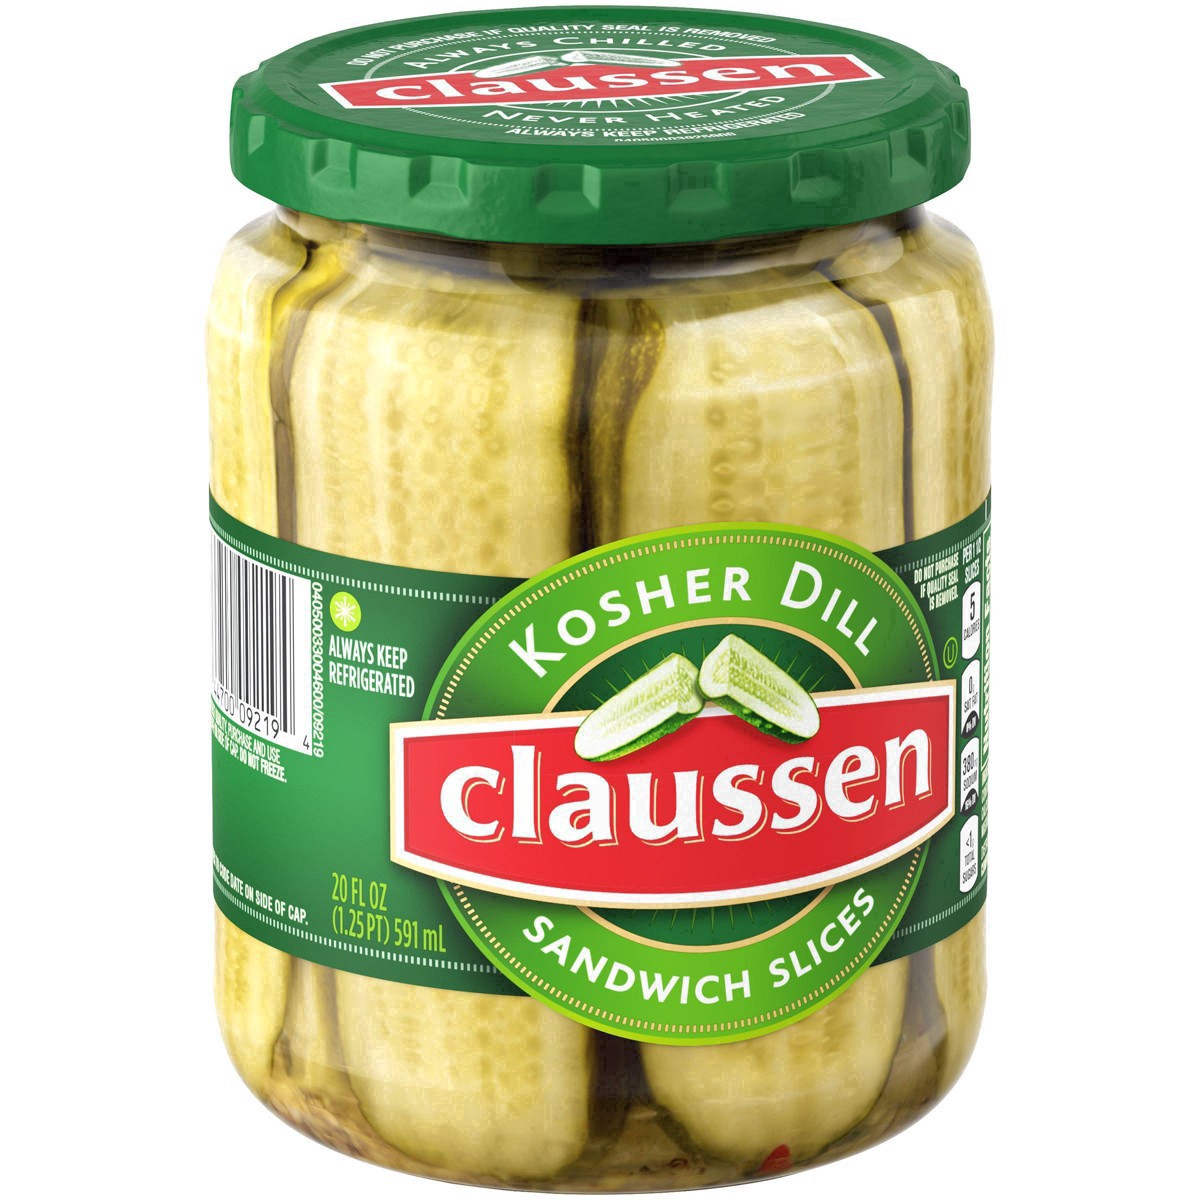 slide 101 of 144, Claussen Kosher Dill Pickle Sandwich Slices, 20 fl. oz. Jar, 20 fl oz